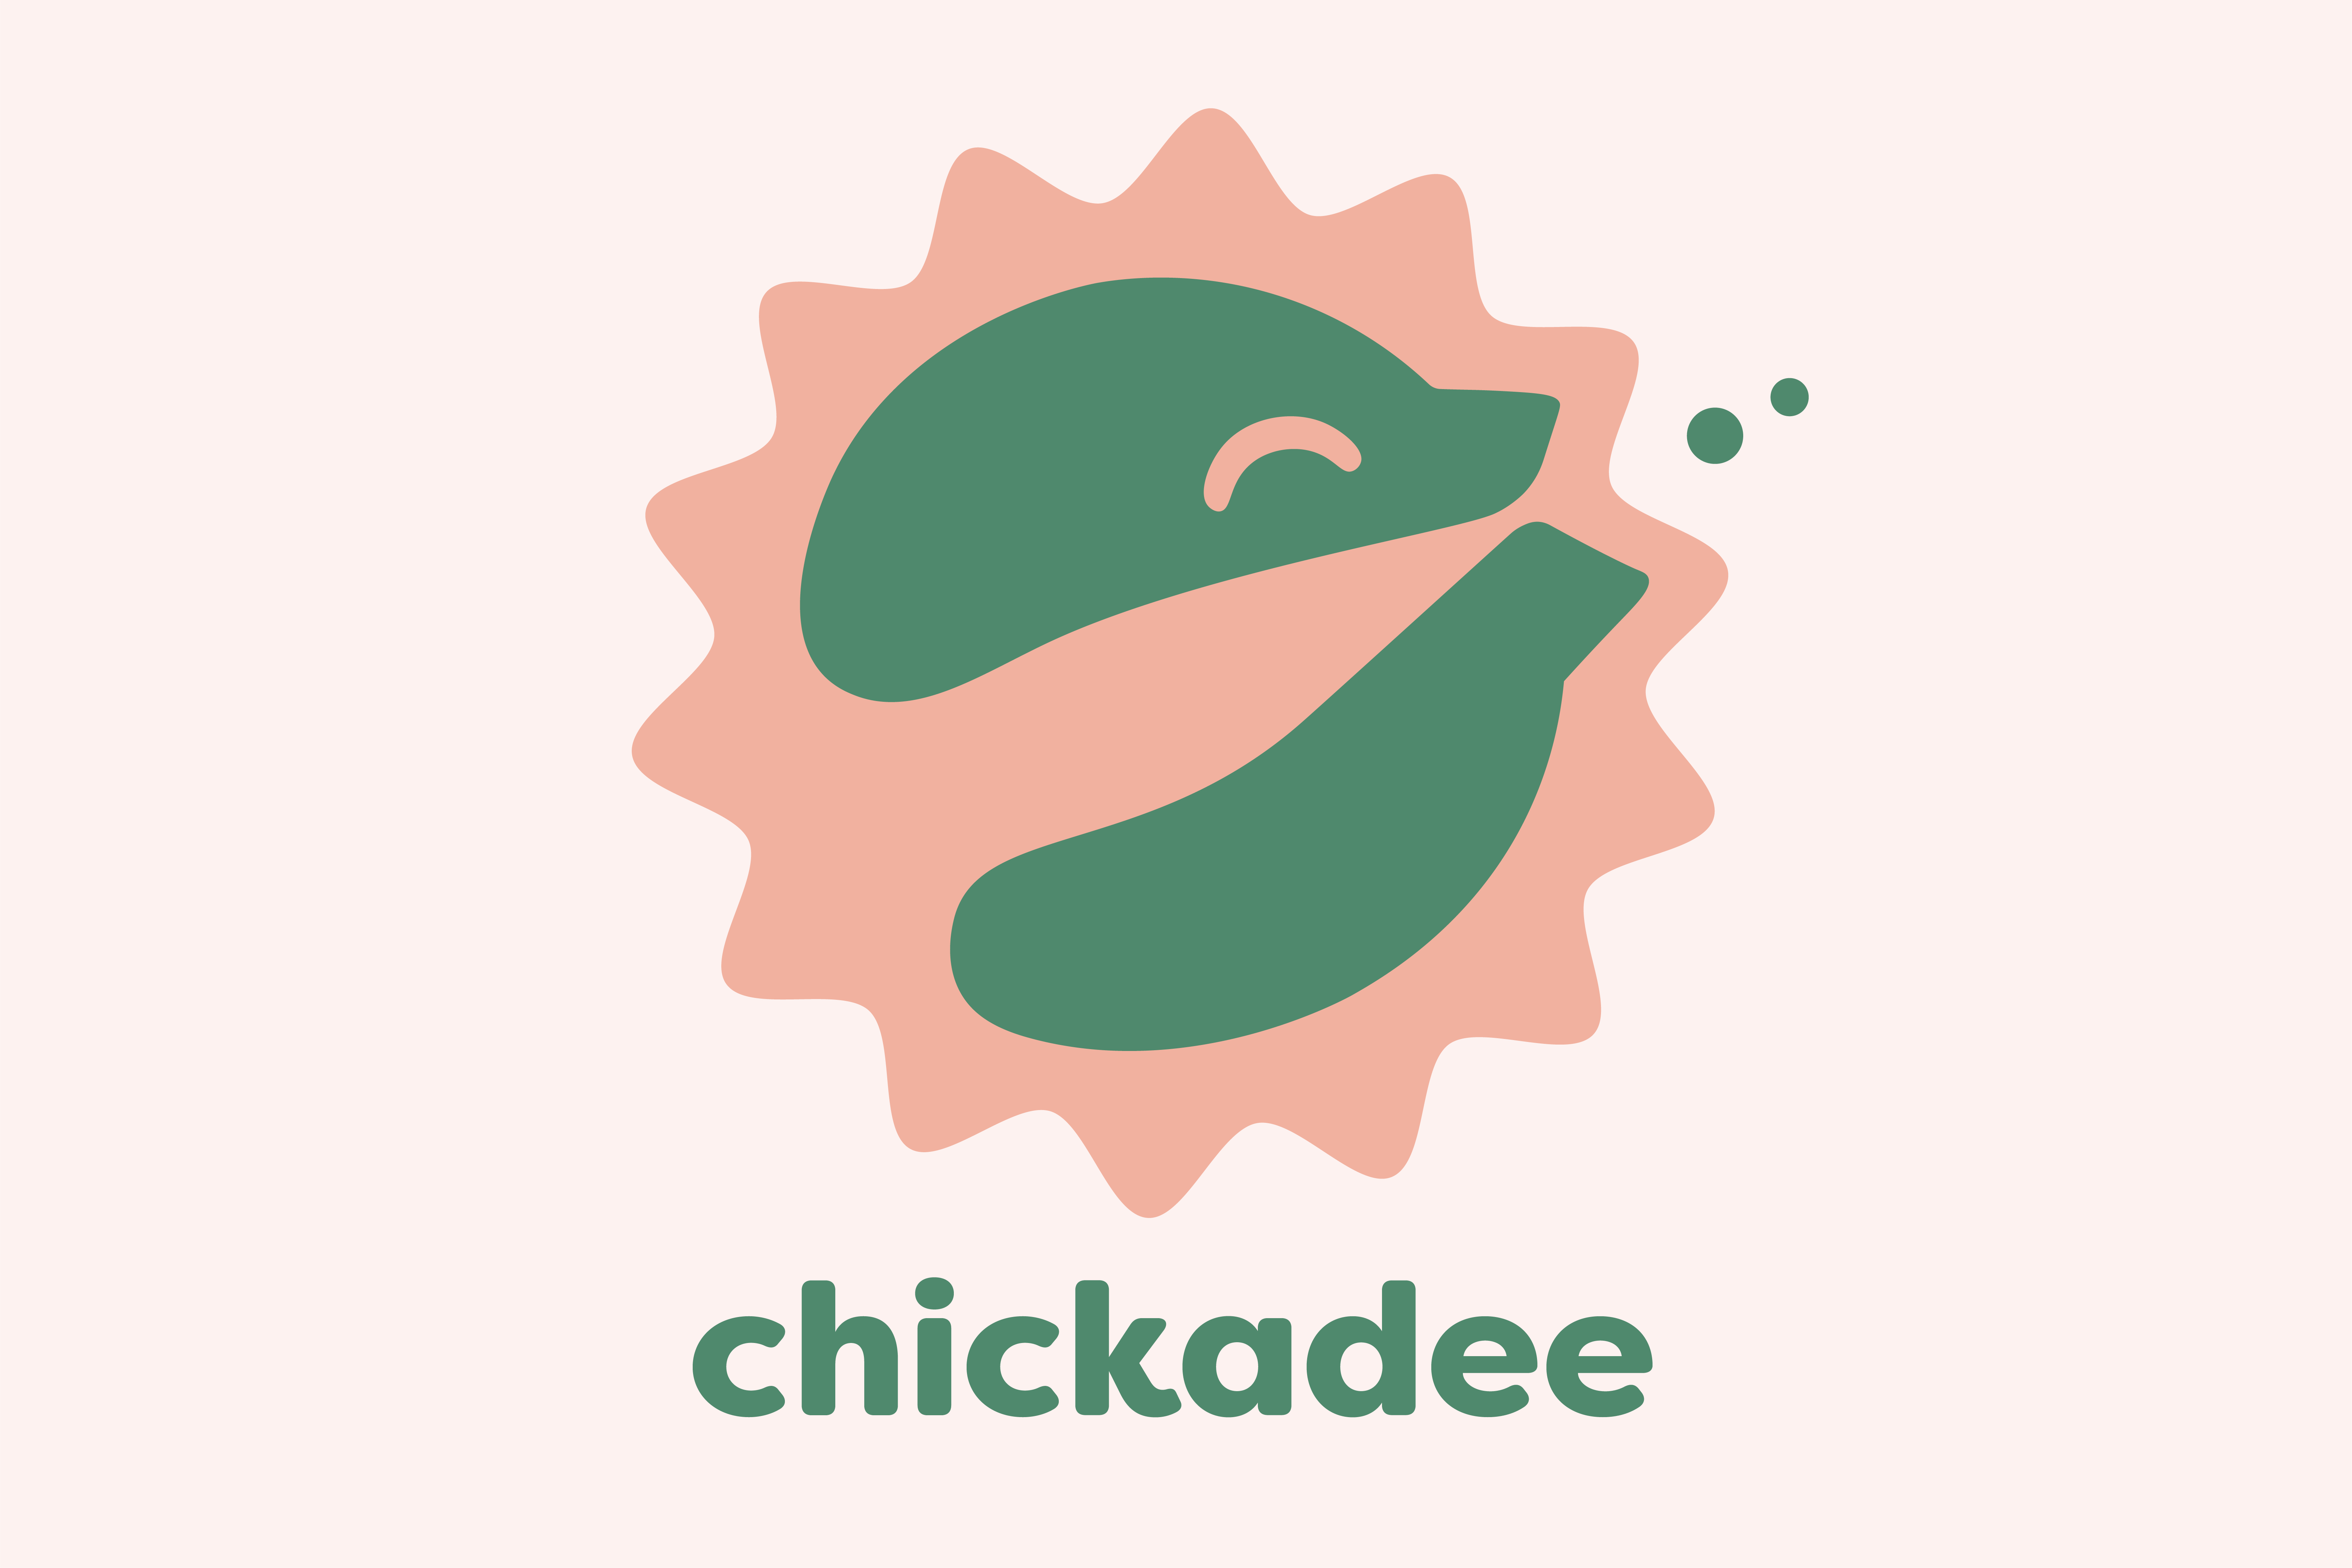 spin chickadee-02